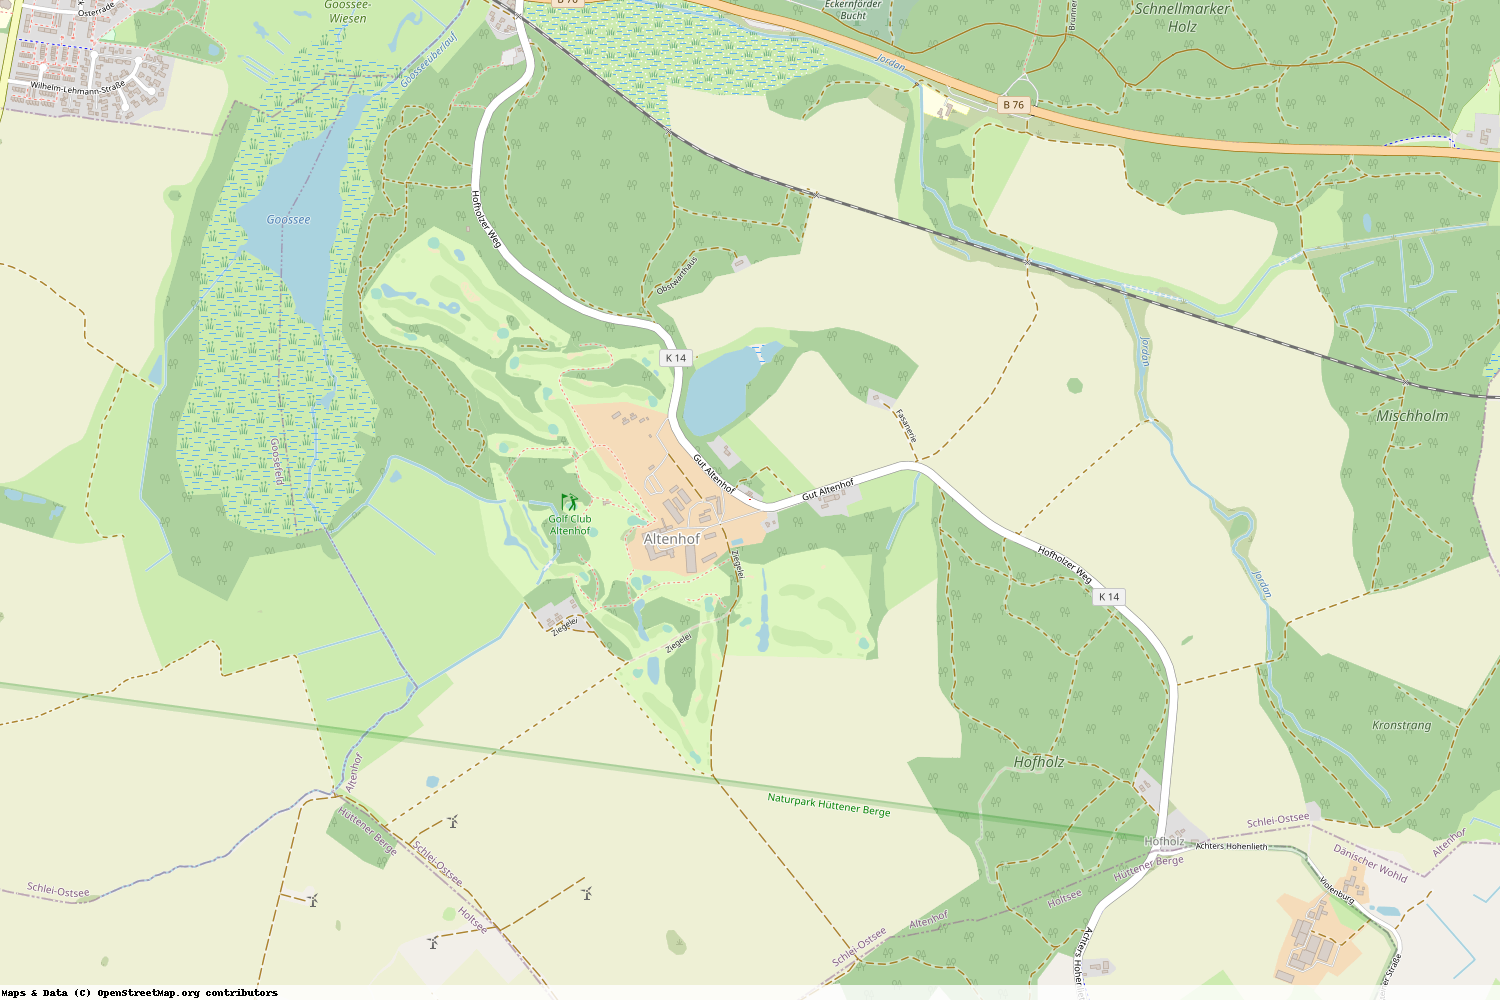 Ist gerade Stromausfall in Schleswig-Holstein - Rendsburg-Eckernförde - Altenhof?